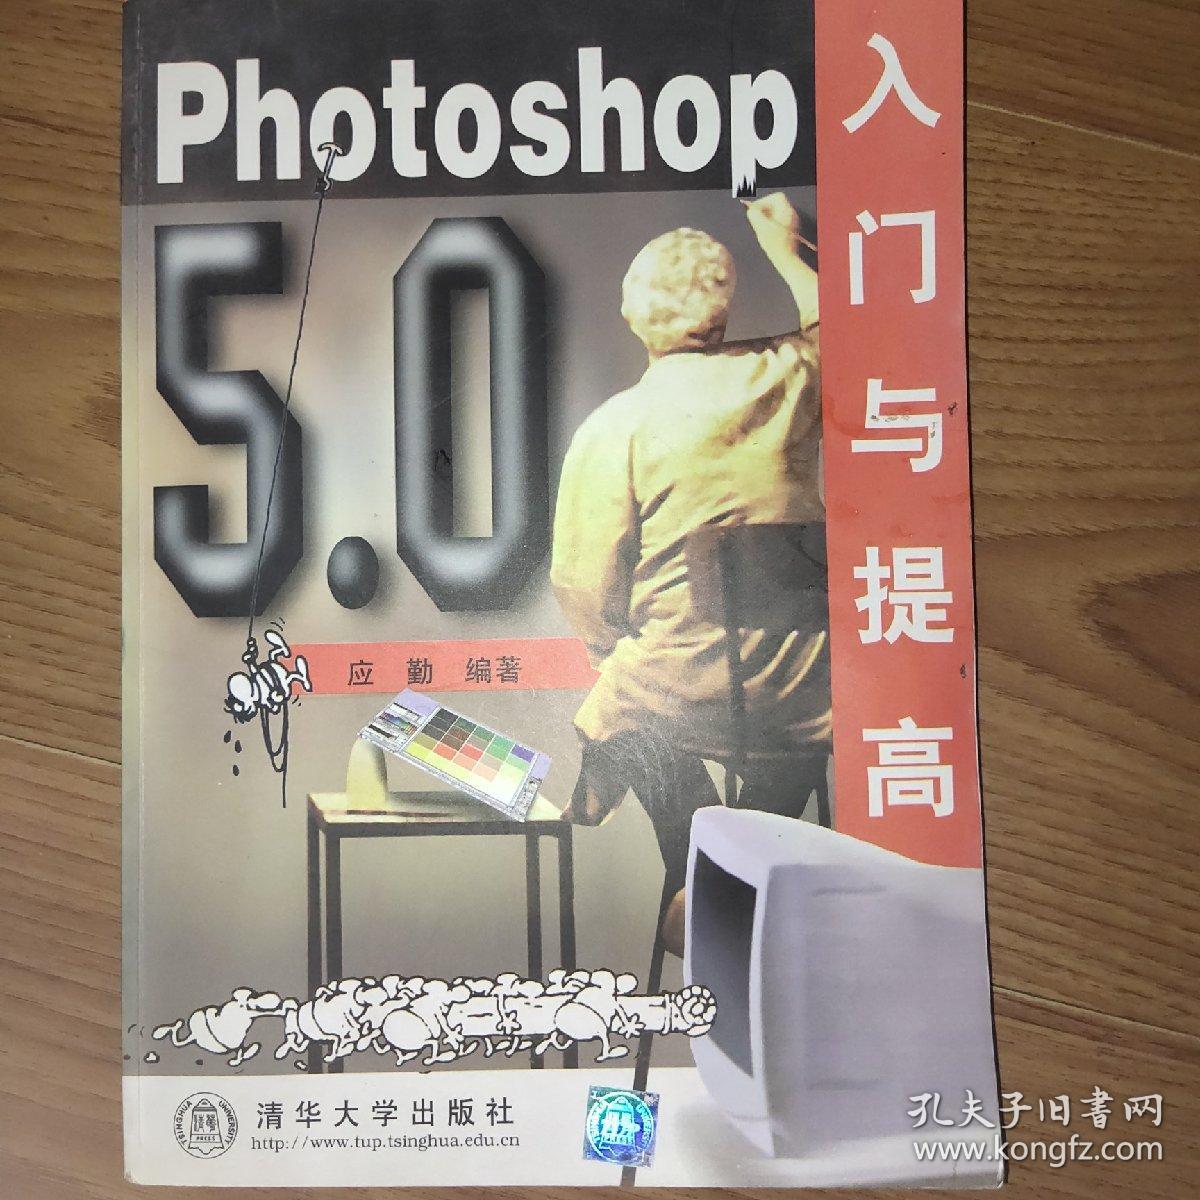 PHOTOSHOP 5.0入门与提高